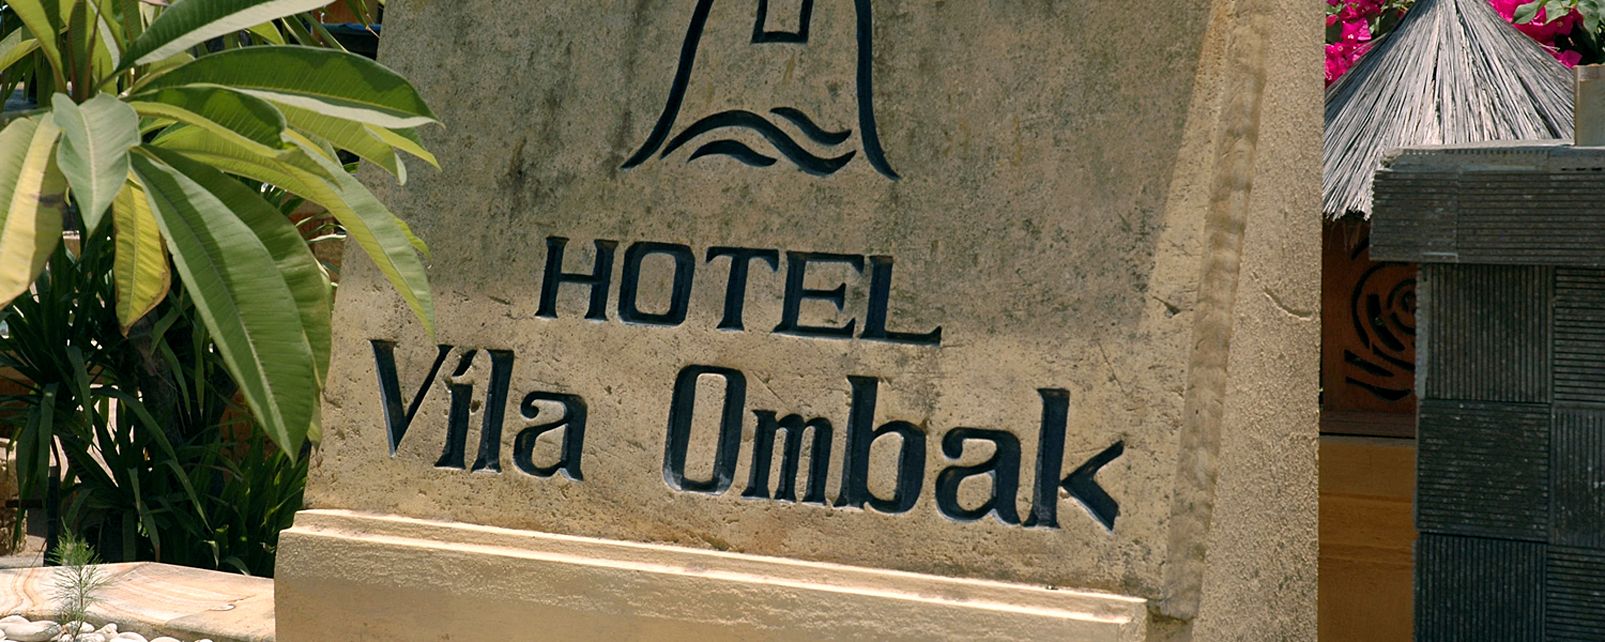 Hotel Vila Ombak